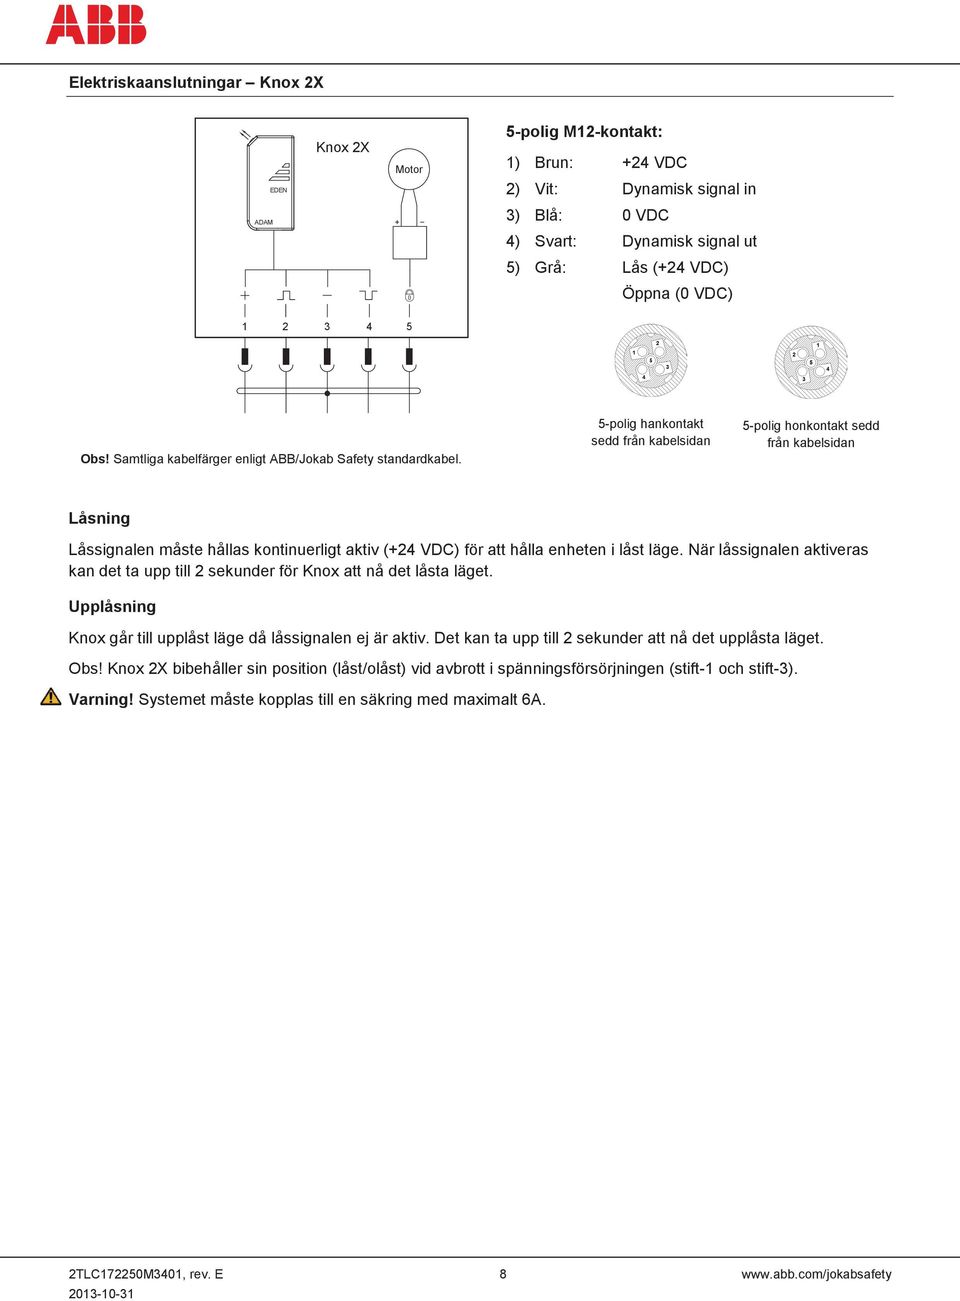 5-polig hankontakt sedd från kabelsidan 5-polig honkontakt sedd från kabelsidan Låsning Låssignalen måste hållas kontinuerligt aktiv (+24 VDC) för att hålla enheten i låst läge.